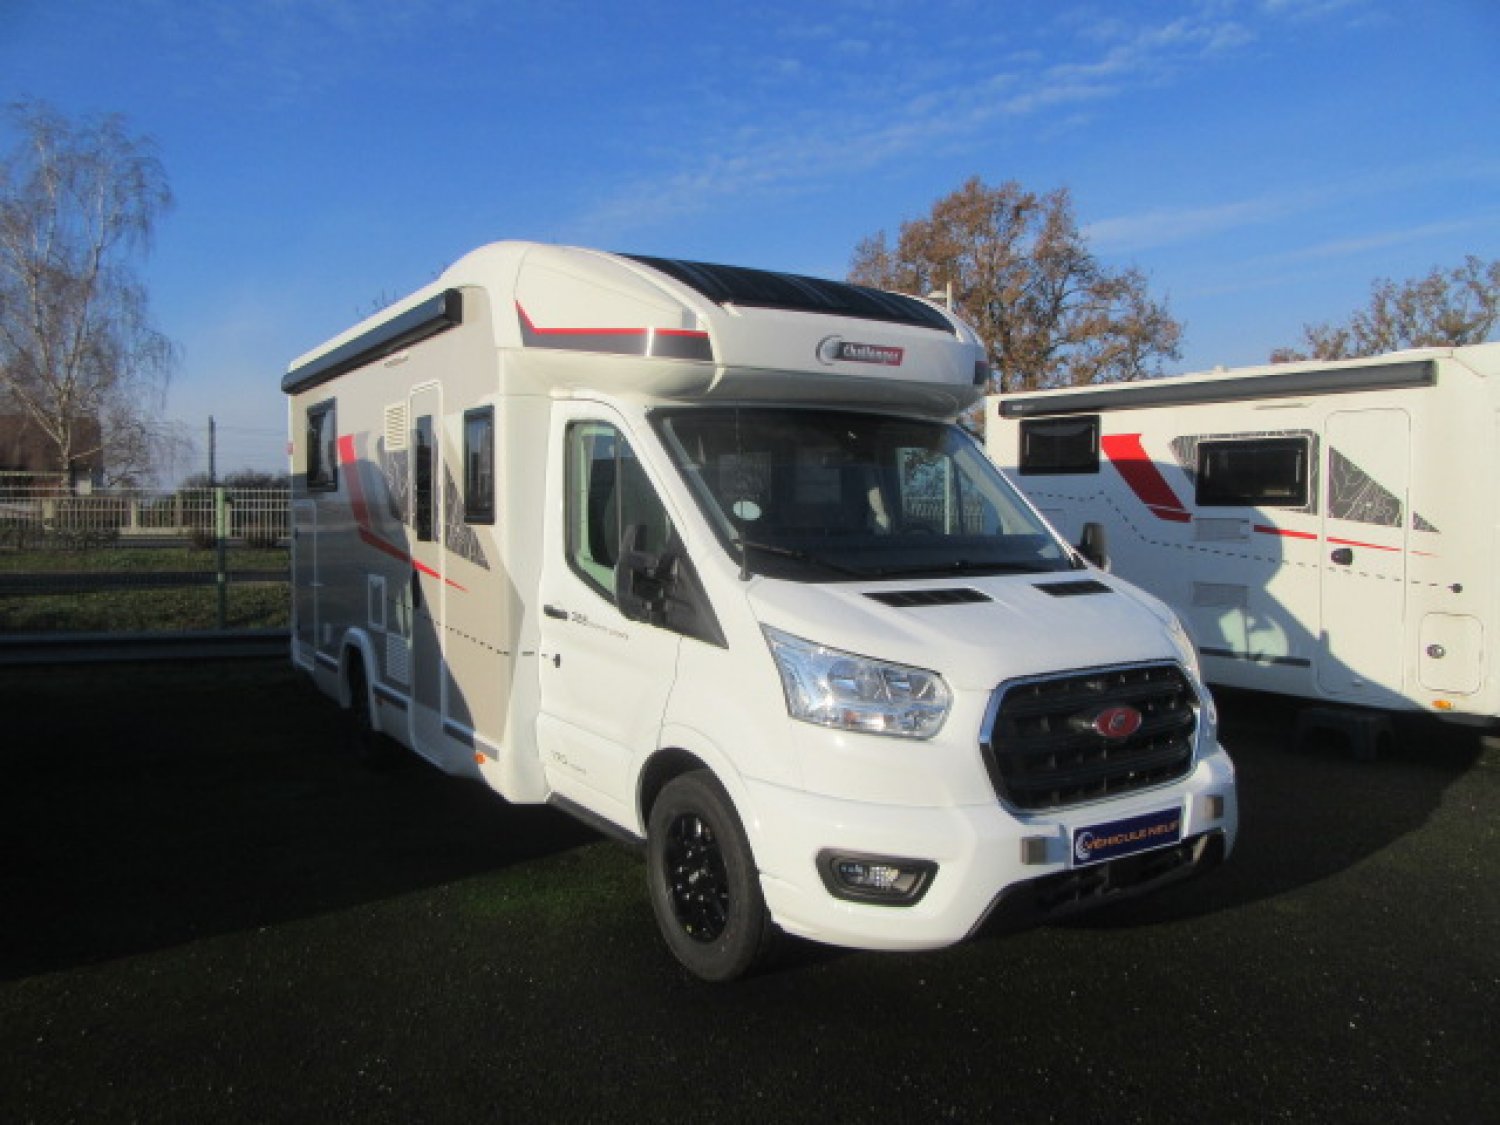 Antoine Caravanes et Camping Car - Challenger 328 GRAPHITE ULTIMATE à 75 770 €